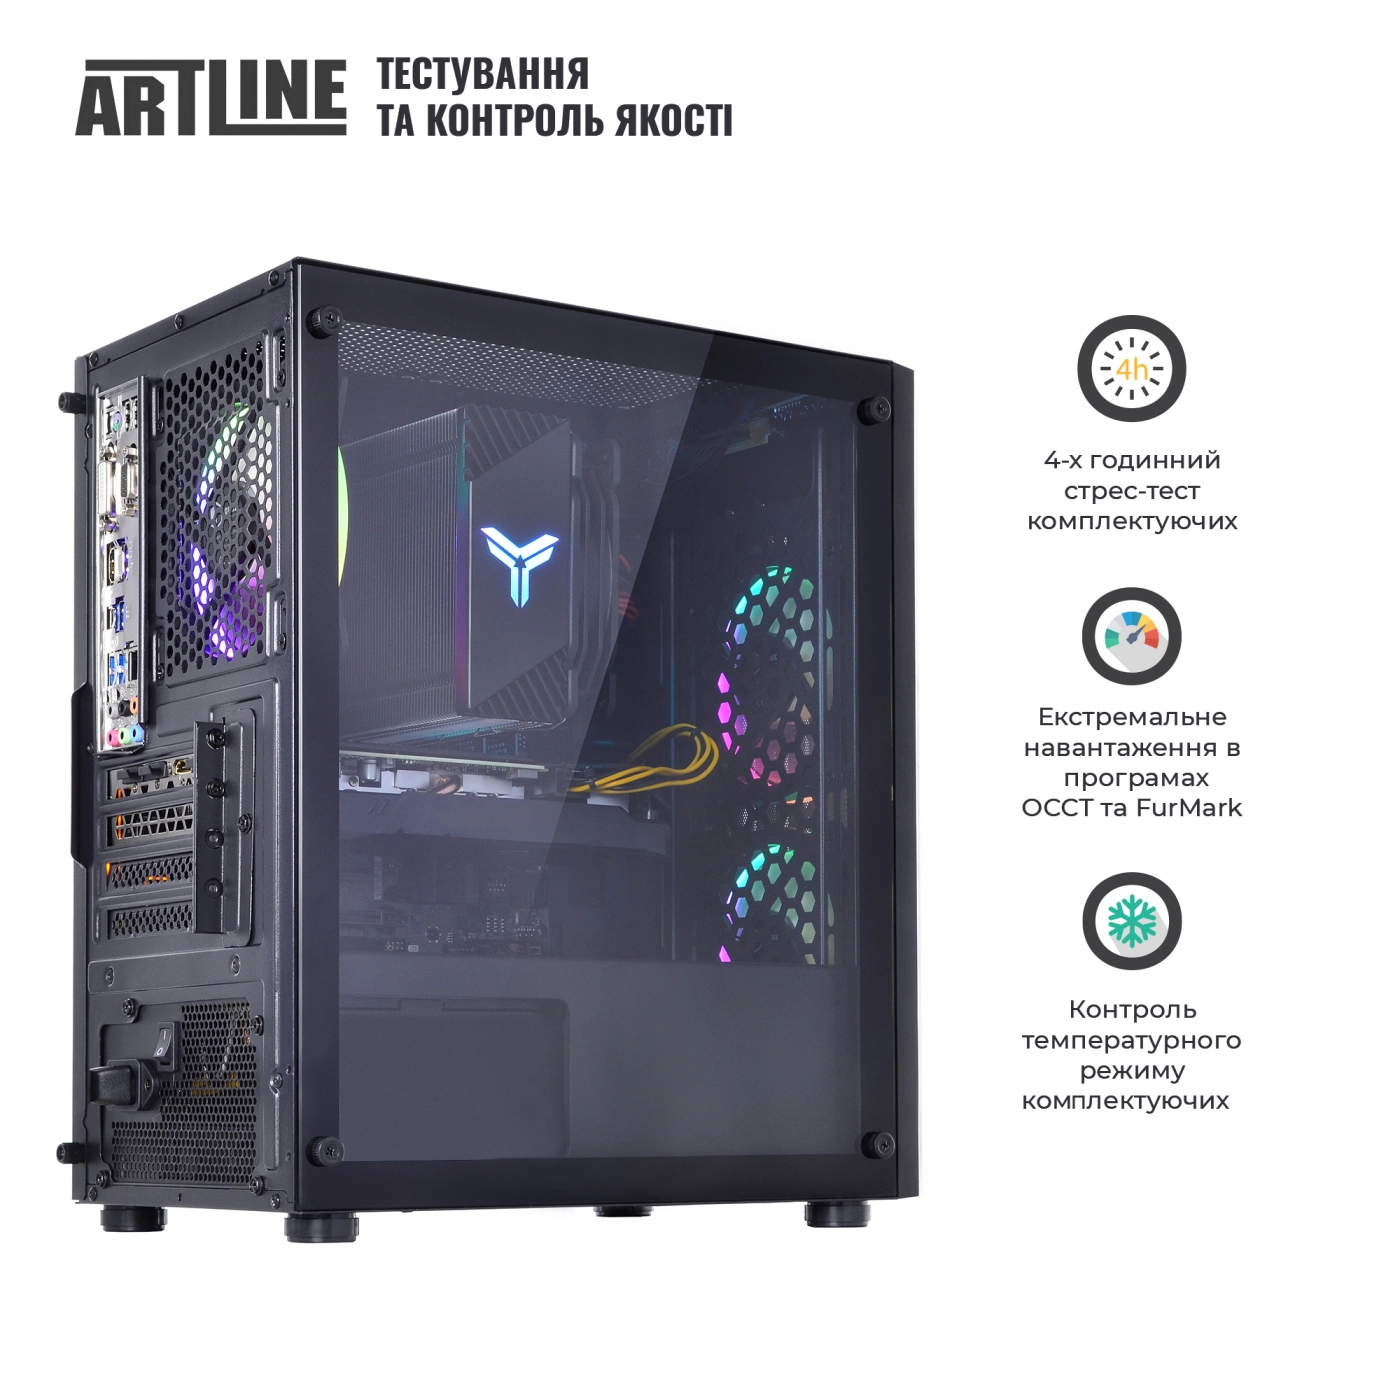 Купить Компьютер ARTLINE Gaming X51v22 - фото 8